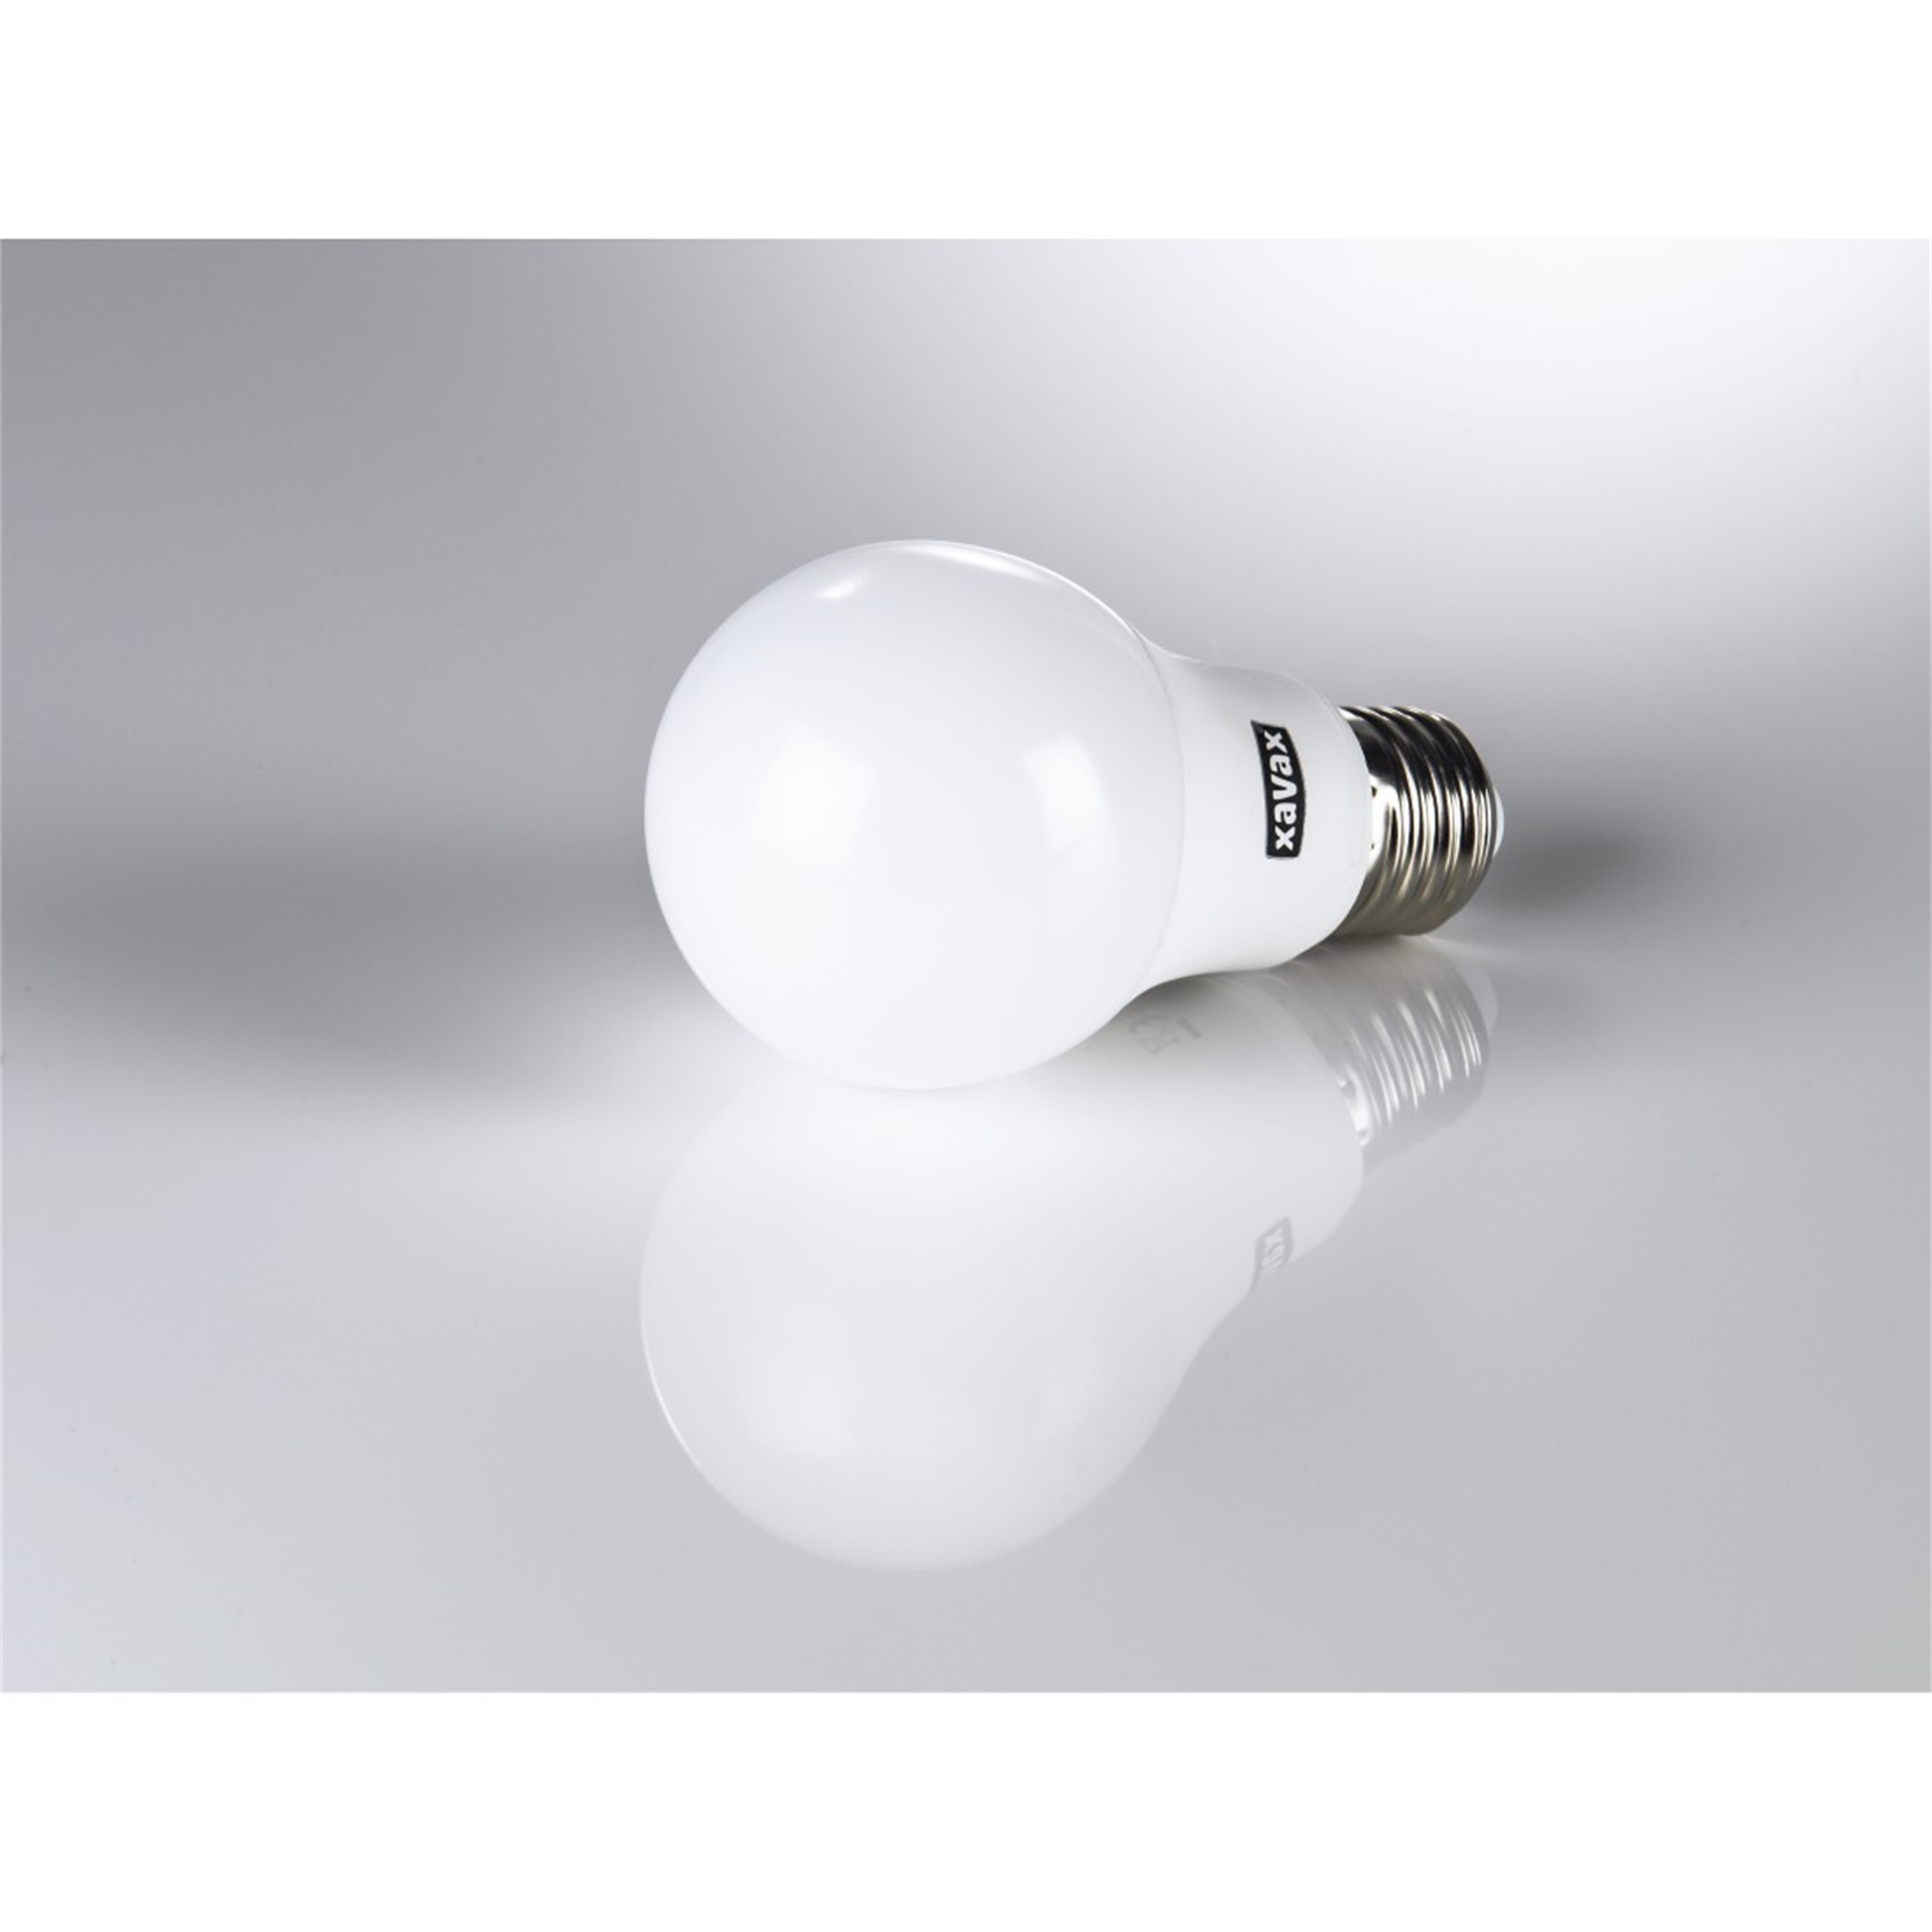 75W LED-Lampe Warmweiß E27, XAVAX ersetzt E27 1055lm